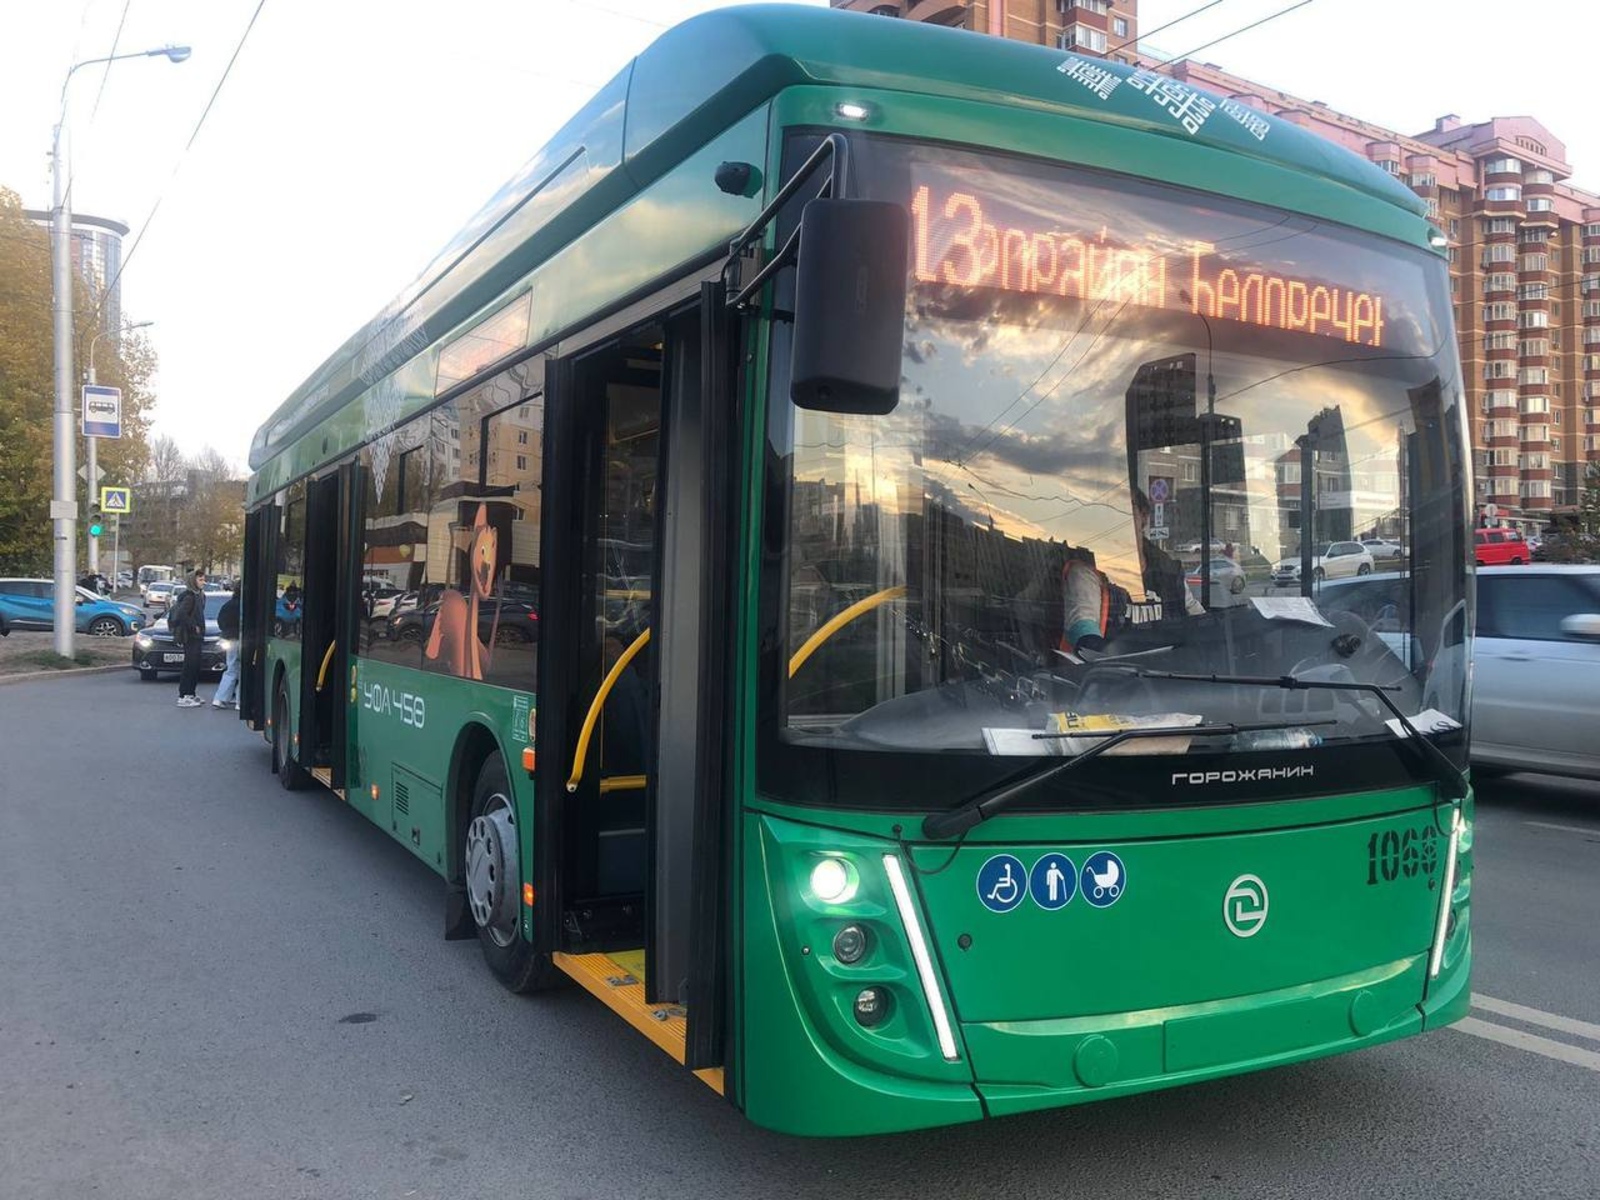 Уфа закупит 10 новых троллейбусов